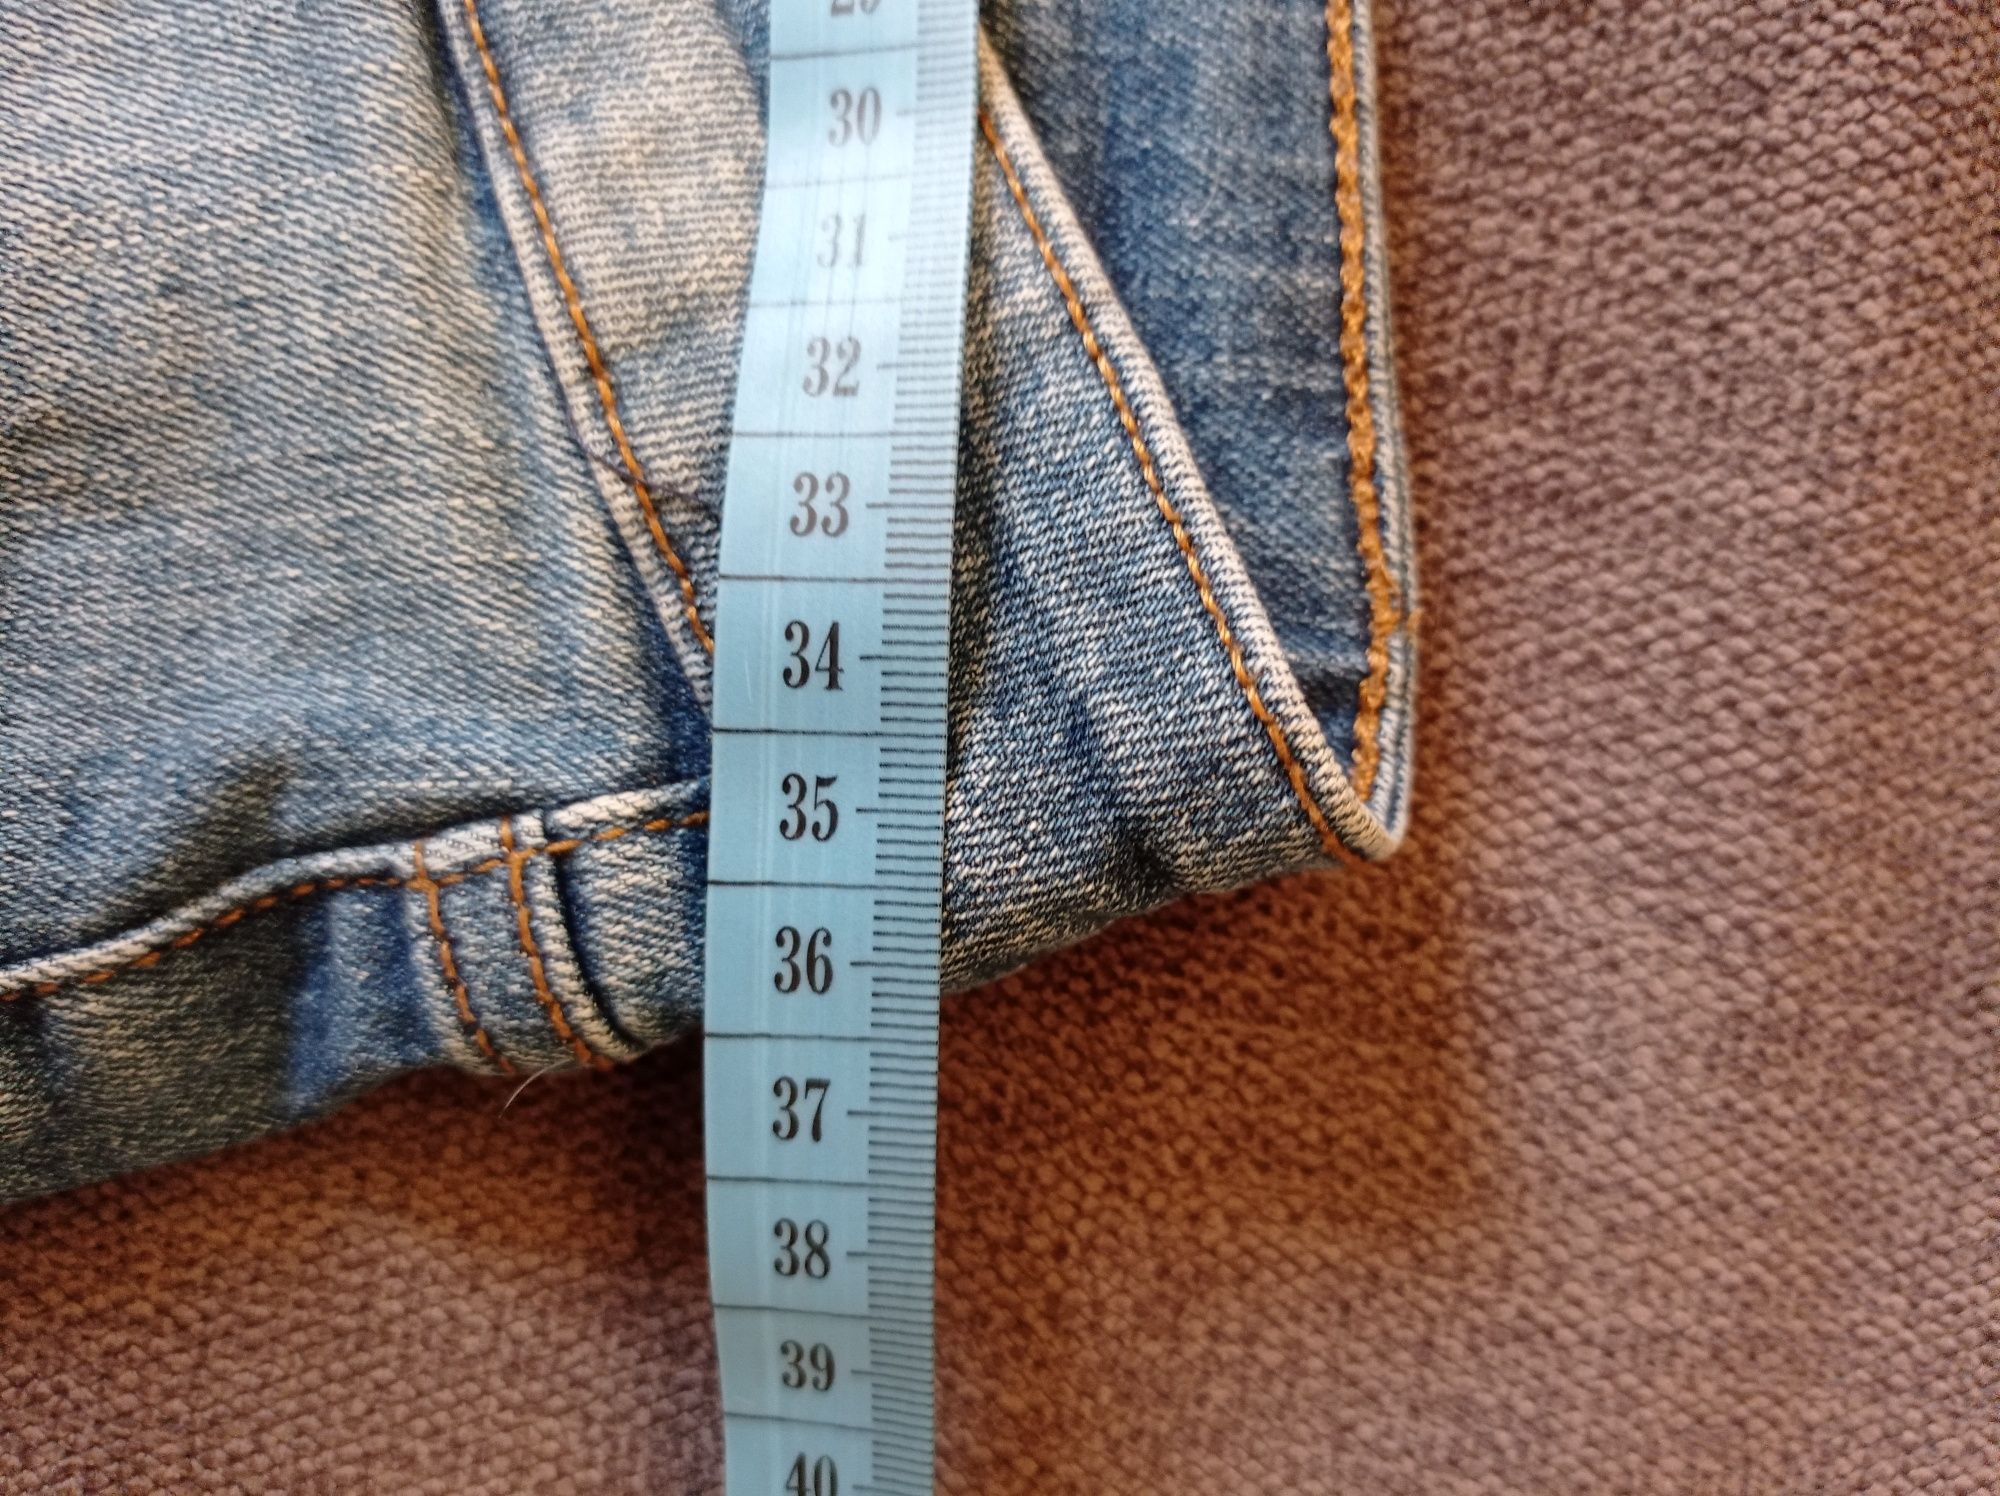 Letnie spodenki jeansowe, C&A, rozmiar XS